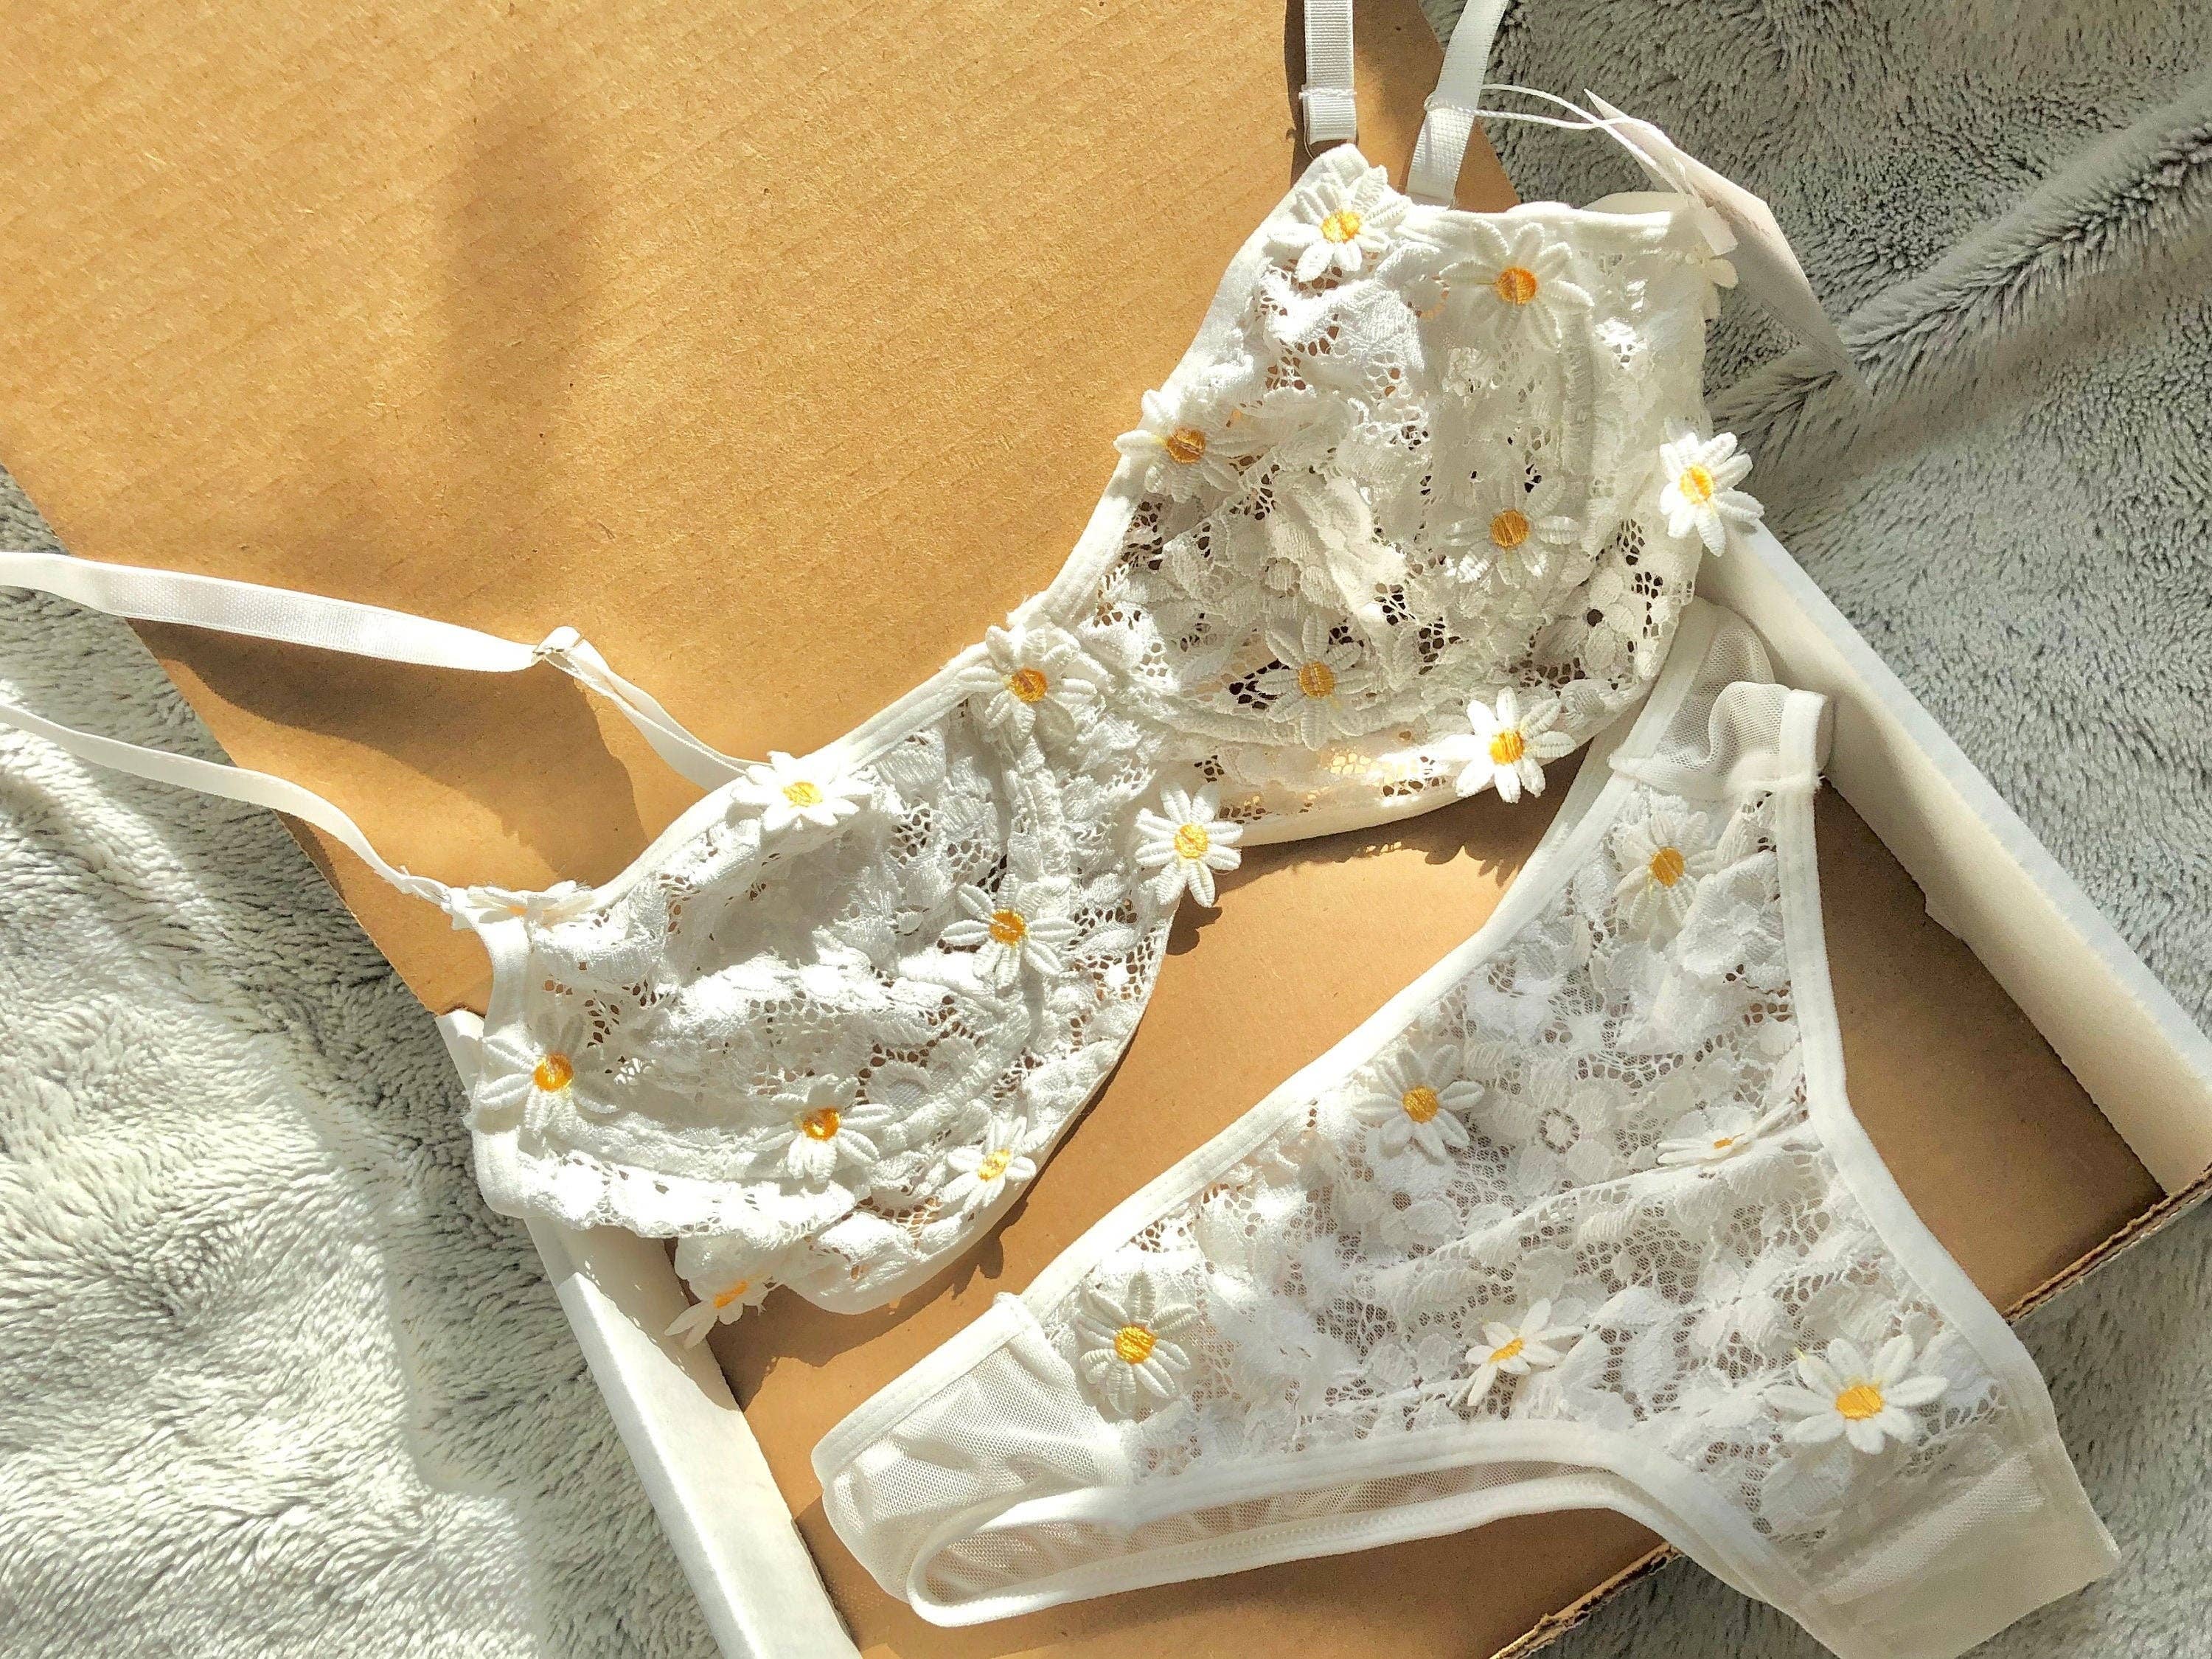 White Ruffle Lingerie Set  Silk Ruffled Underwear & Bralette – Moxy